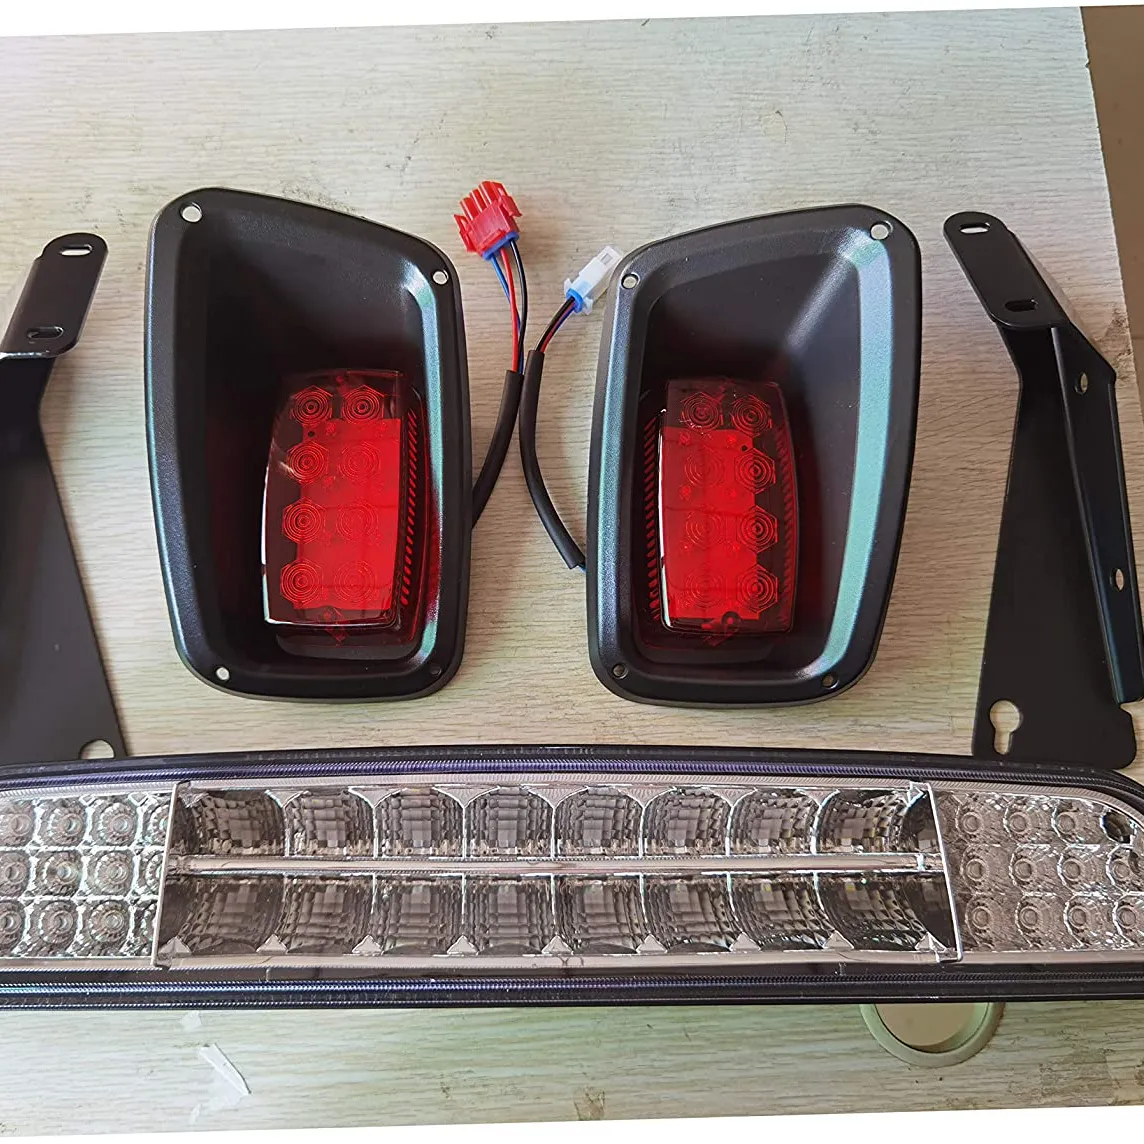 EZGO TXT 라이트 키트 1996-2013 가스 및 전기 톱 골프 카트 LED 헤드 라이트 미등 키트 설치 지침